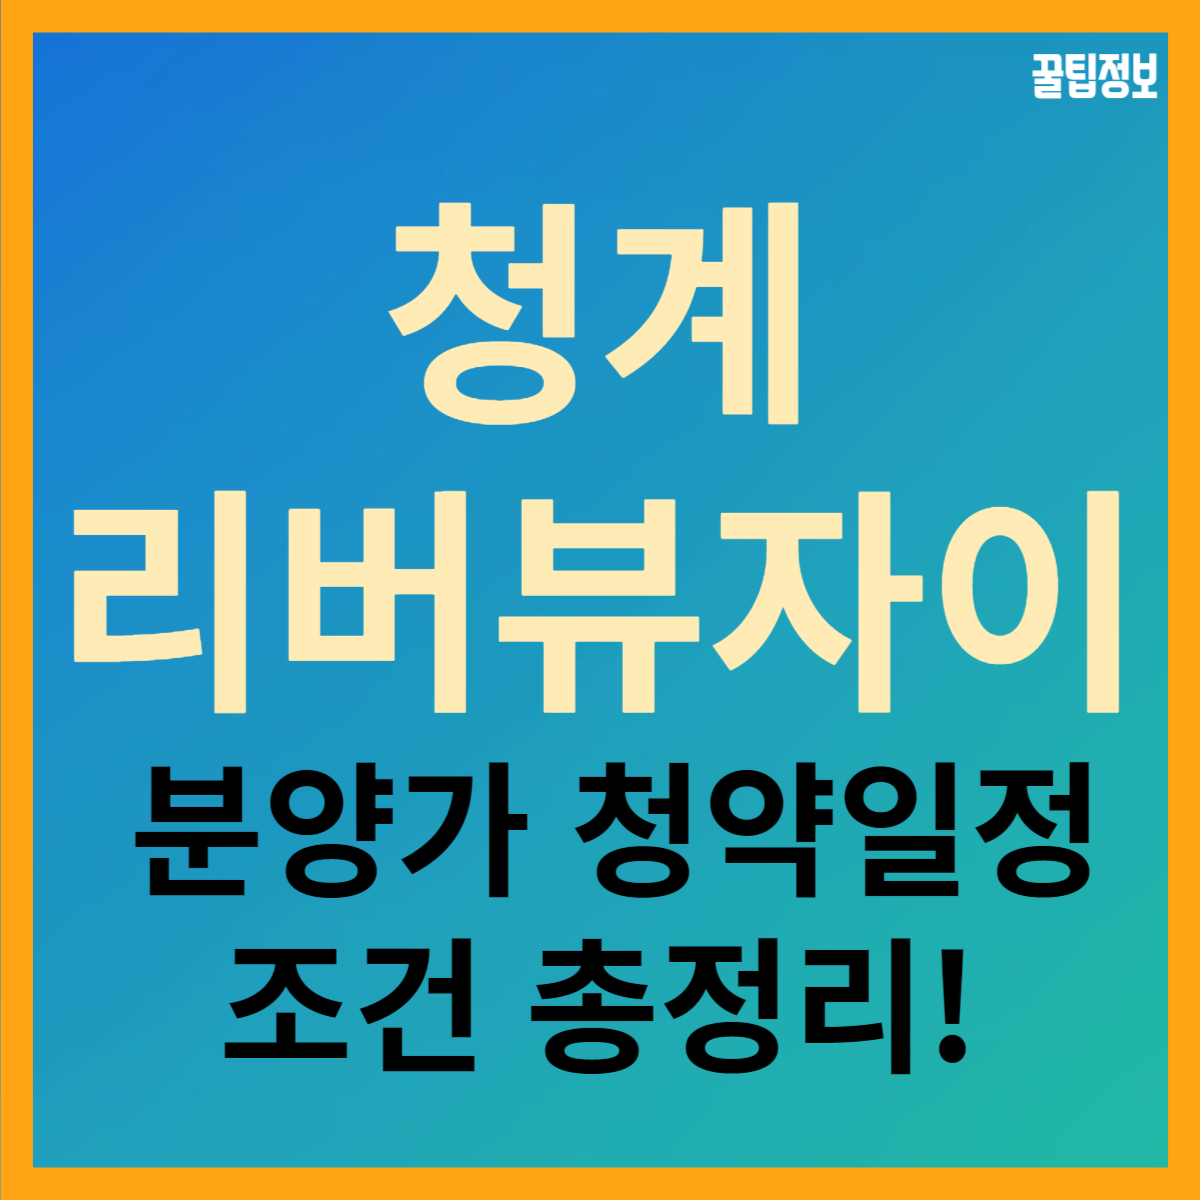 성동구 용답동 재개발 청계 리버뷰 자이 분양가 청약 일정 조건 총정리!